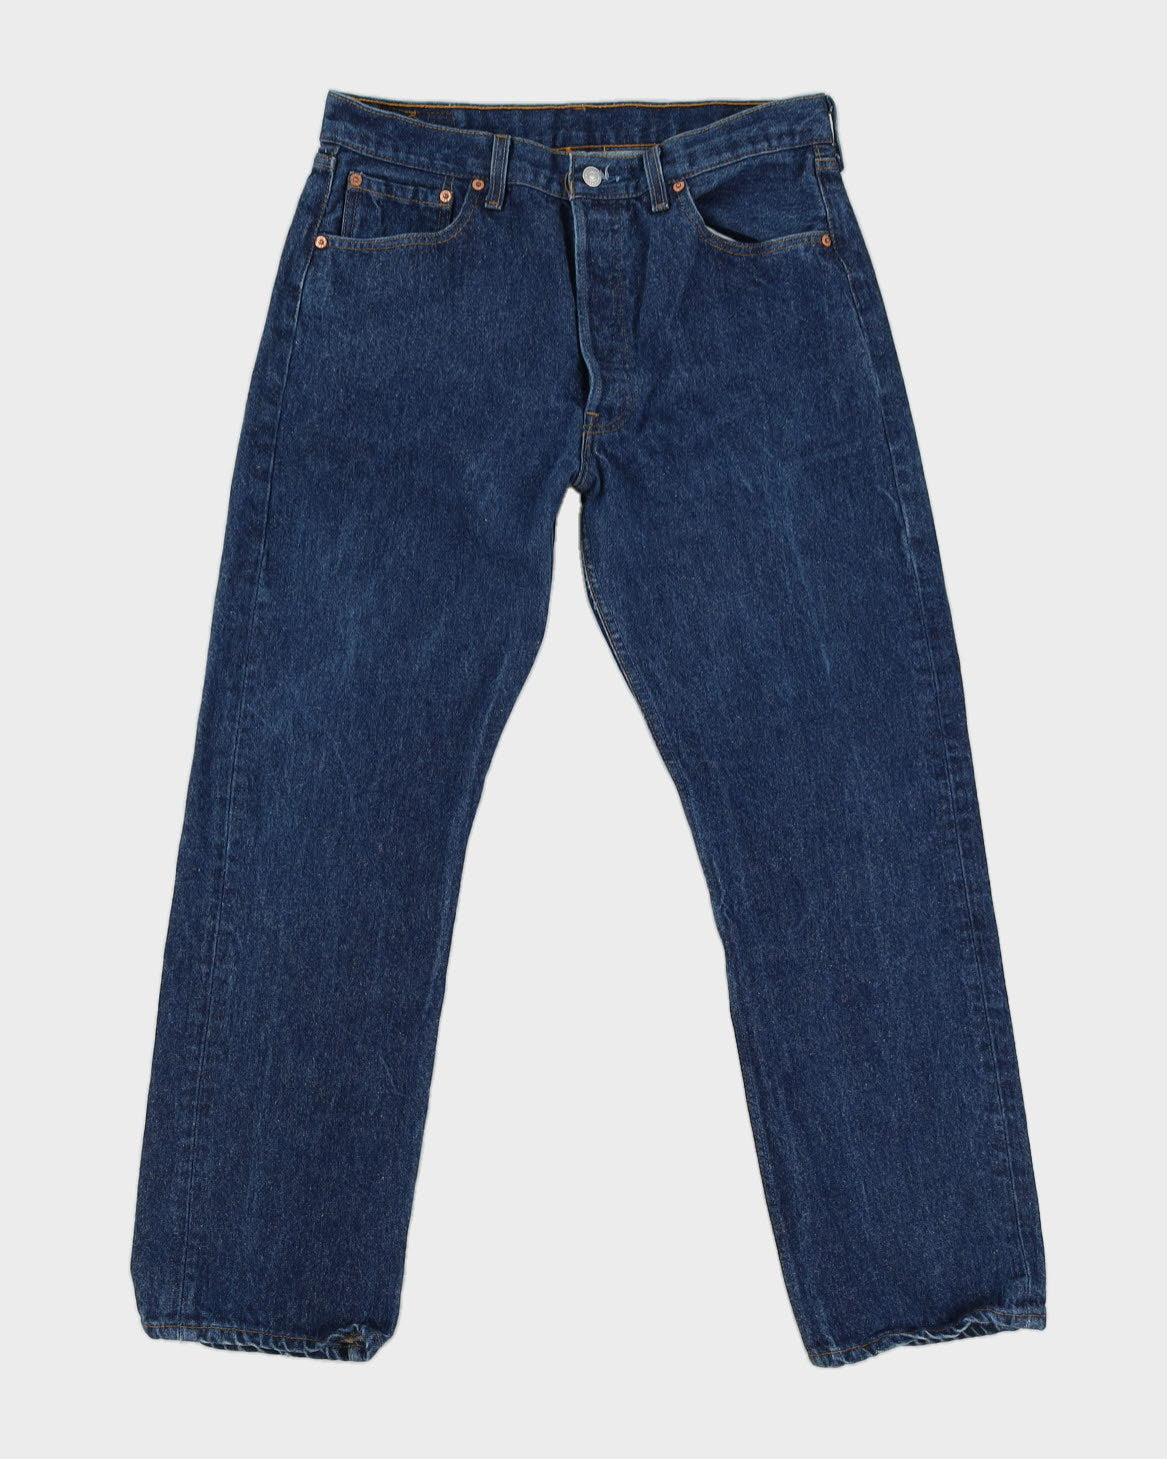 Mens Blue Levi's 501 Jeans- W34 L30